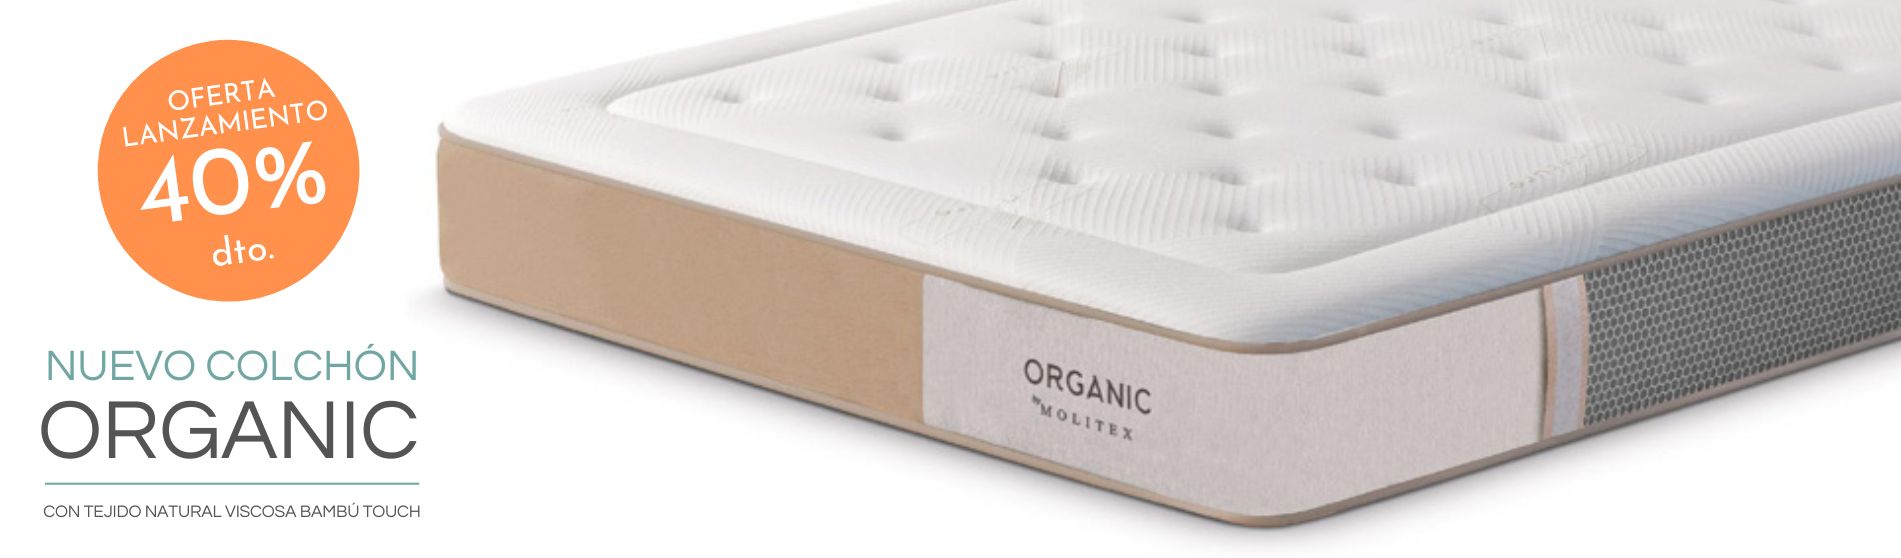 Oferta lanzamiento colchón Organic